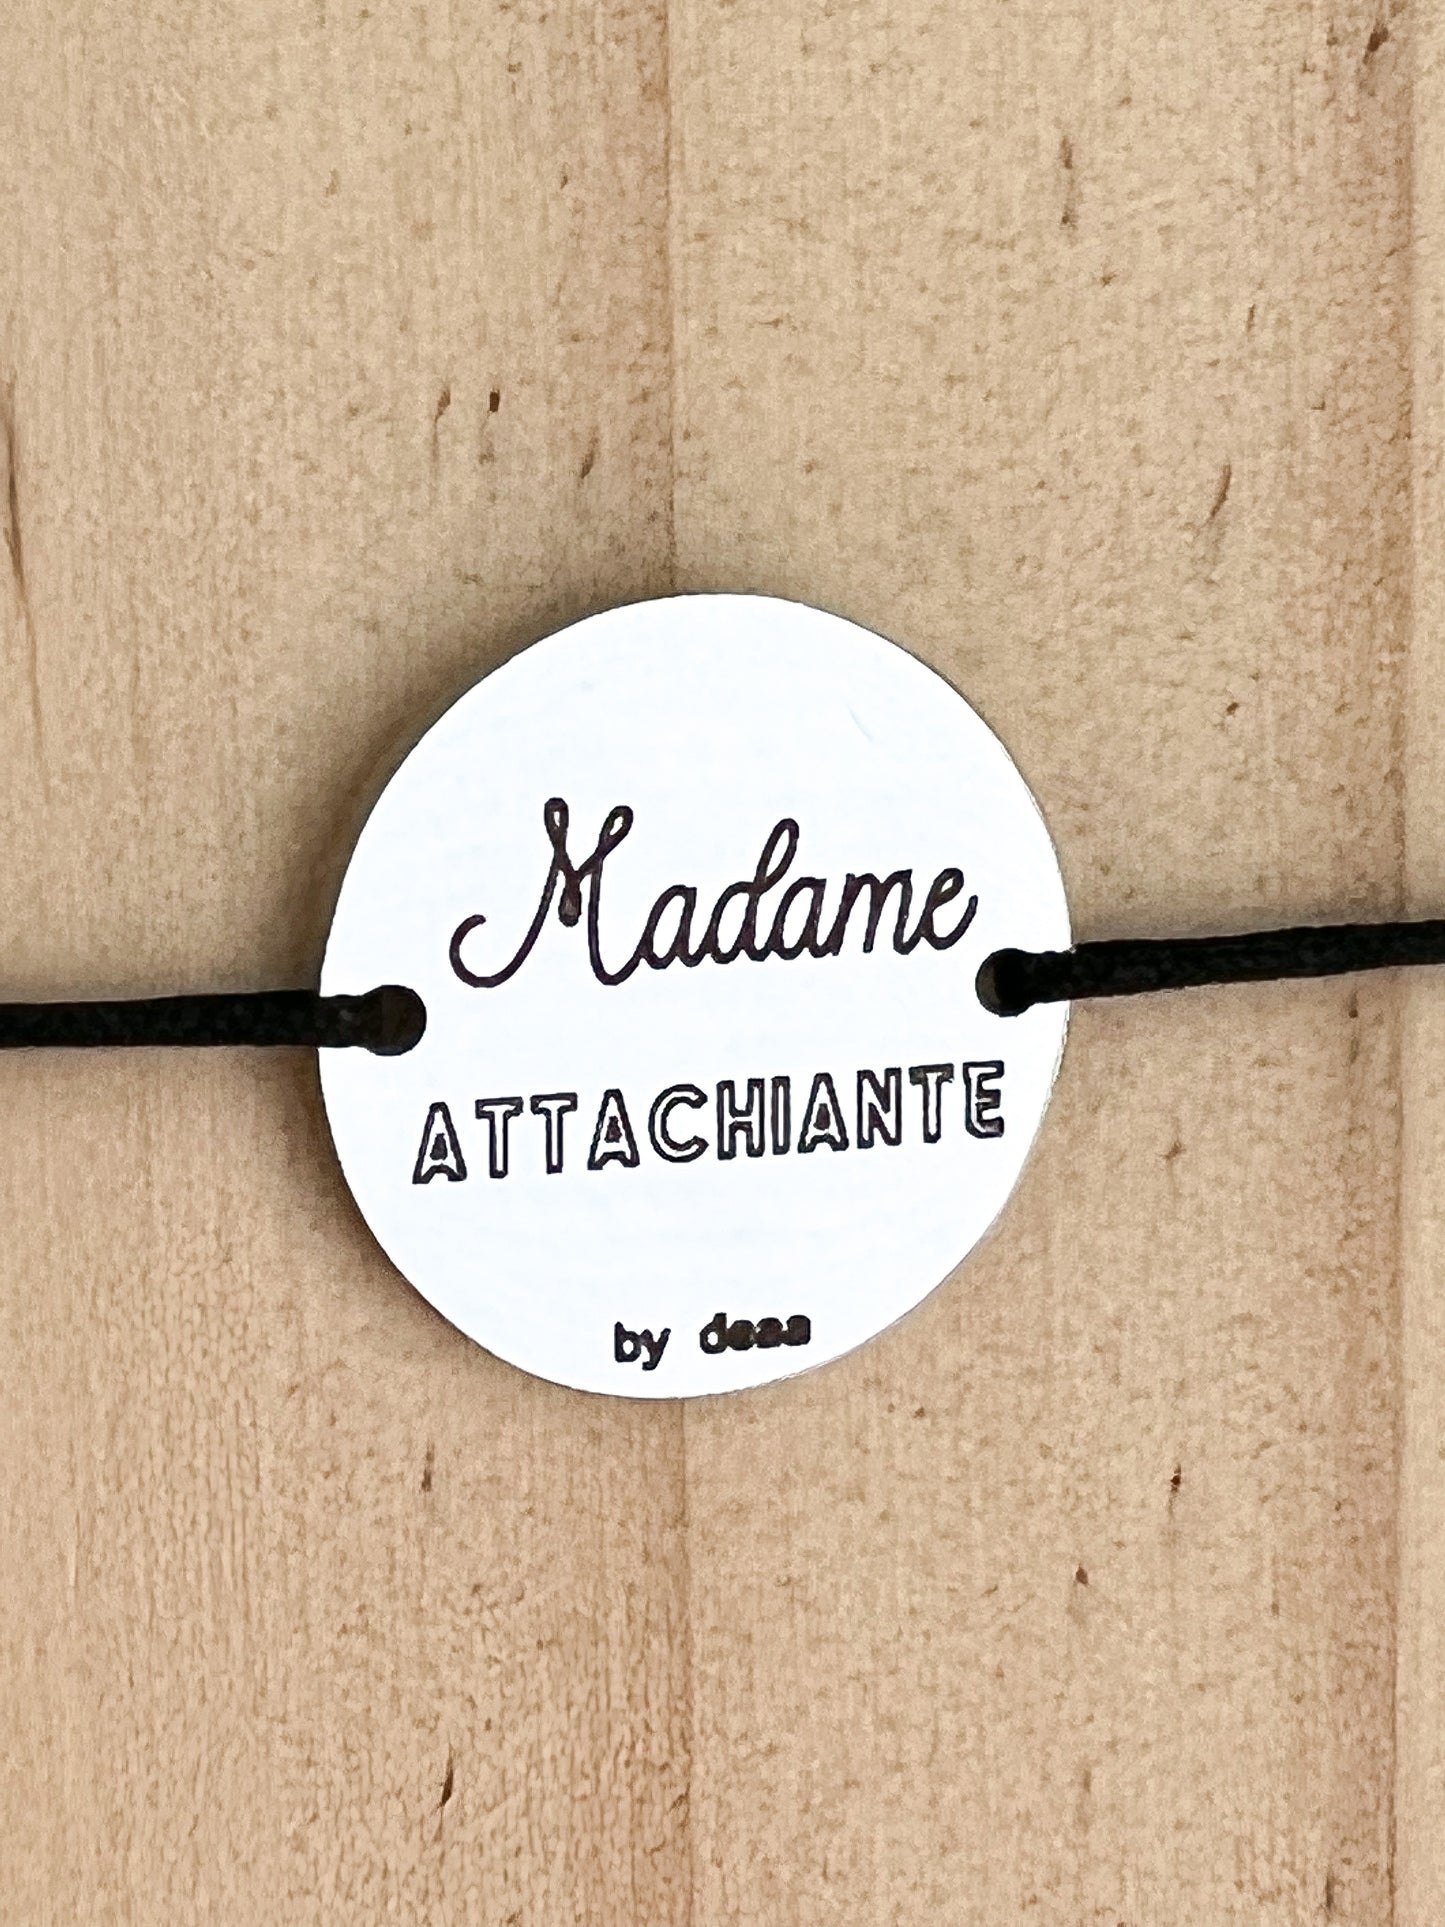 Madame Attachiante